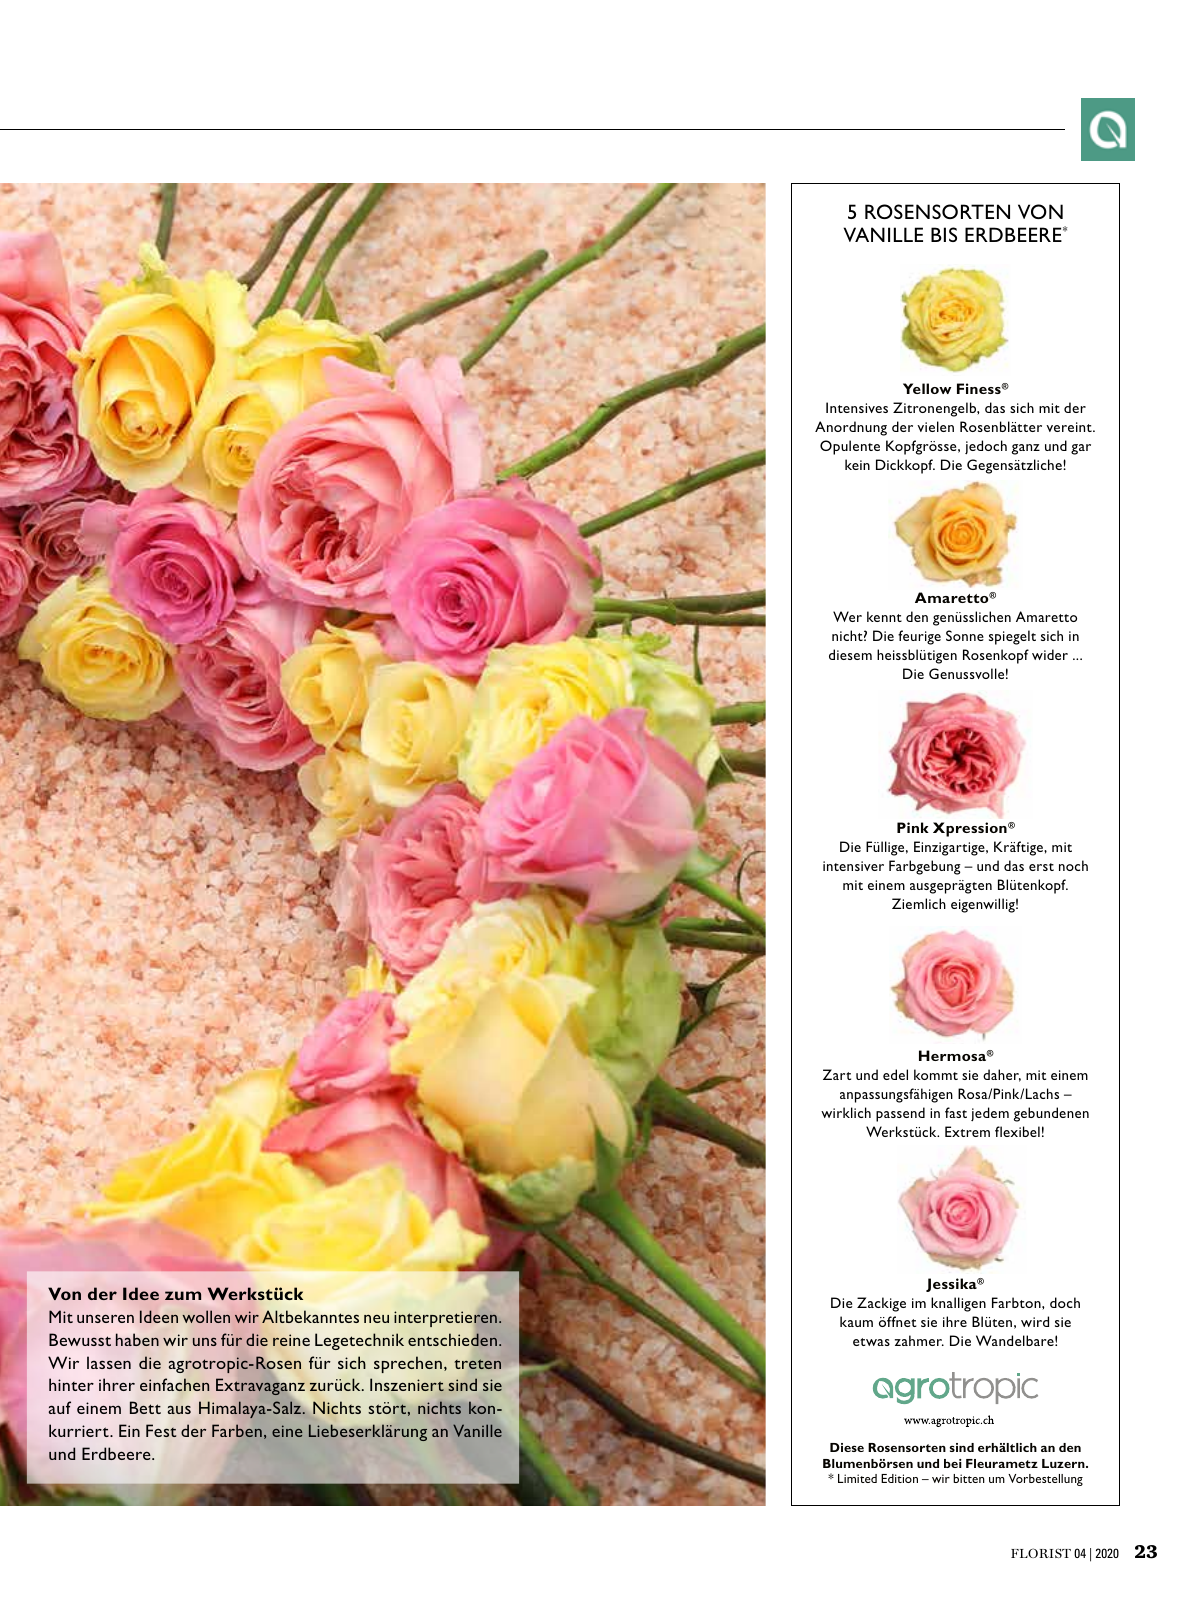 Vorschau Florist - Ausgabe April 2020 Seite 21